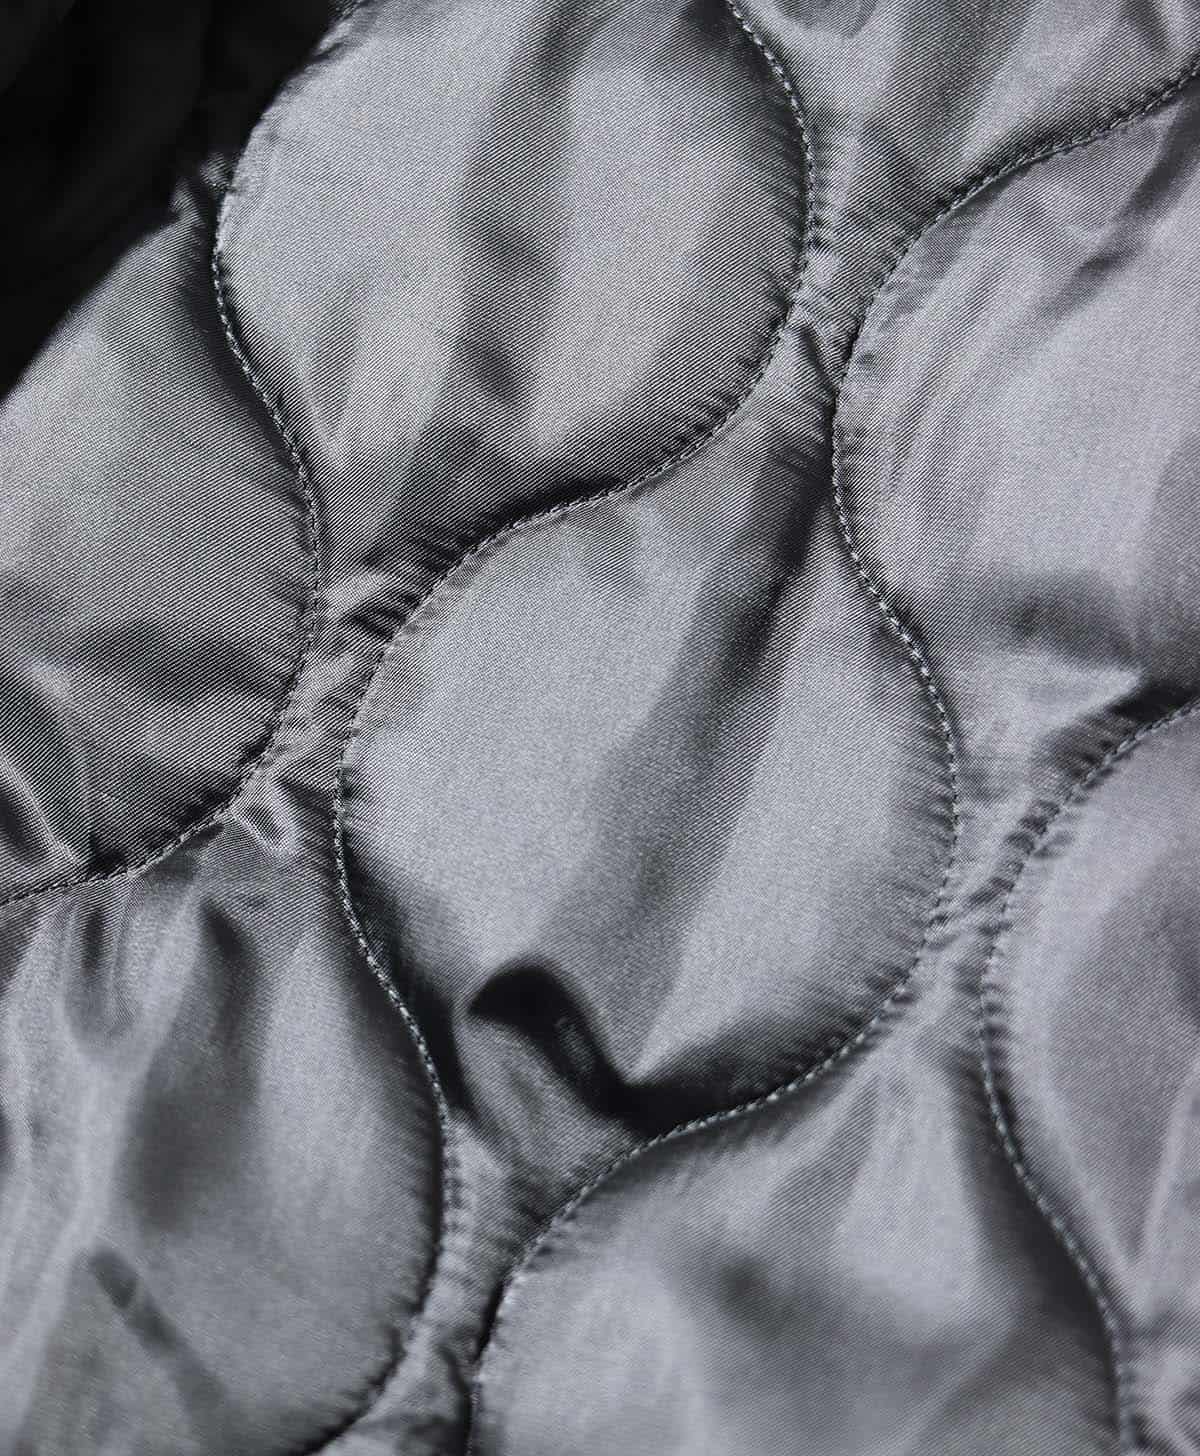 ライナージャケットの袖ぐり下部は、運動性と蒸れを考慮しての空きになっている。キルティングにはミリタリーパターンを採用